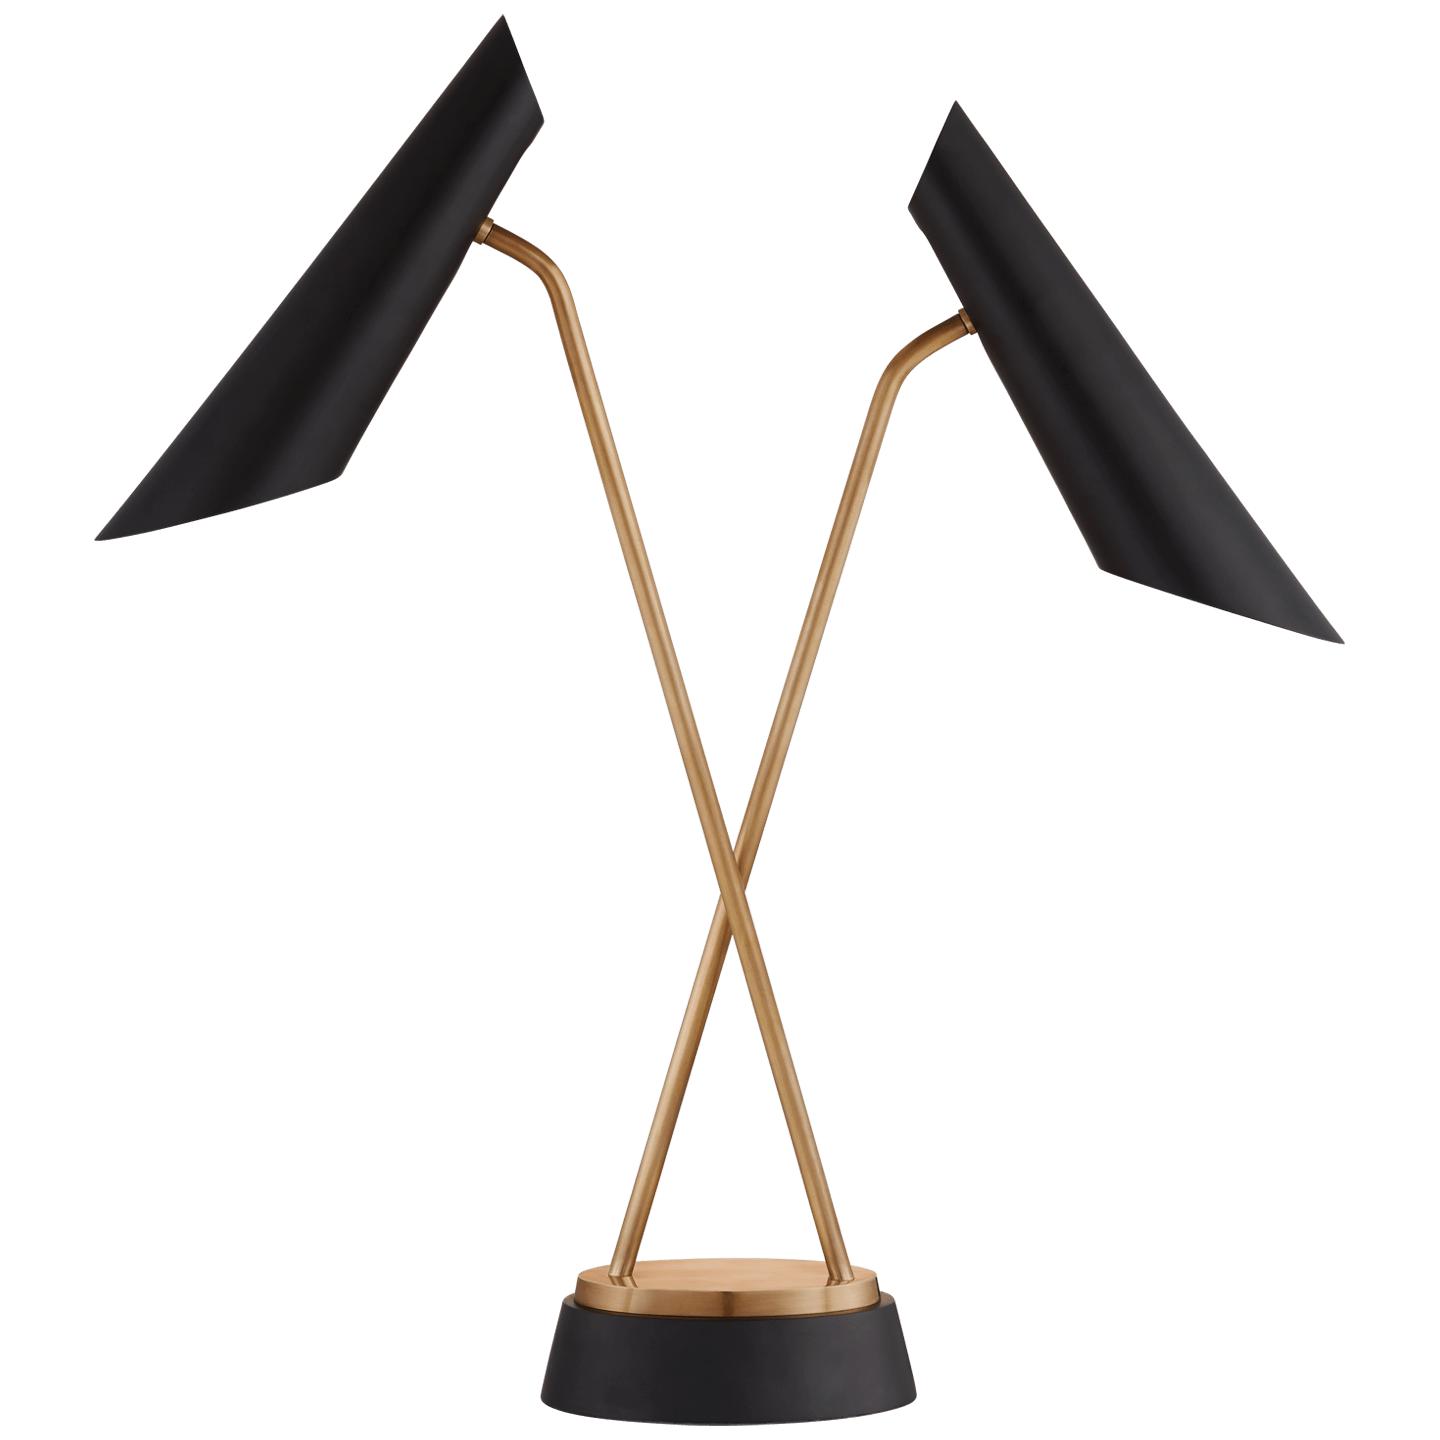 Купить Рабочая лампа Franca Double Pivoting Task Lamp в интернет-магазине roooms.ru